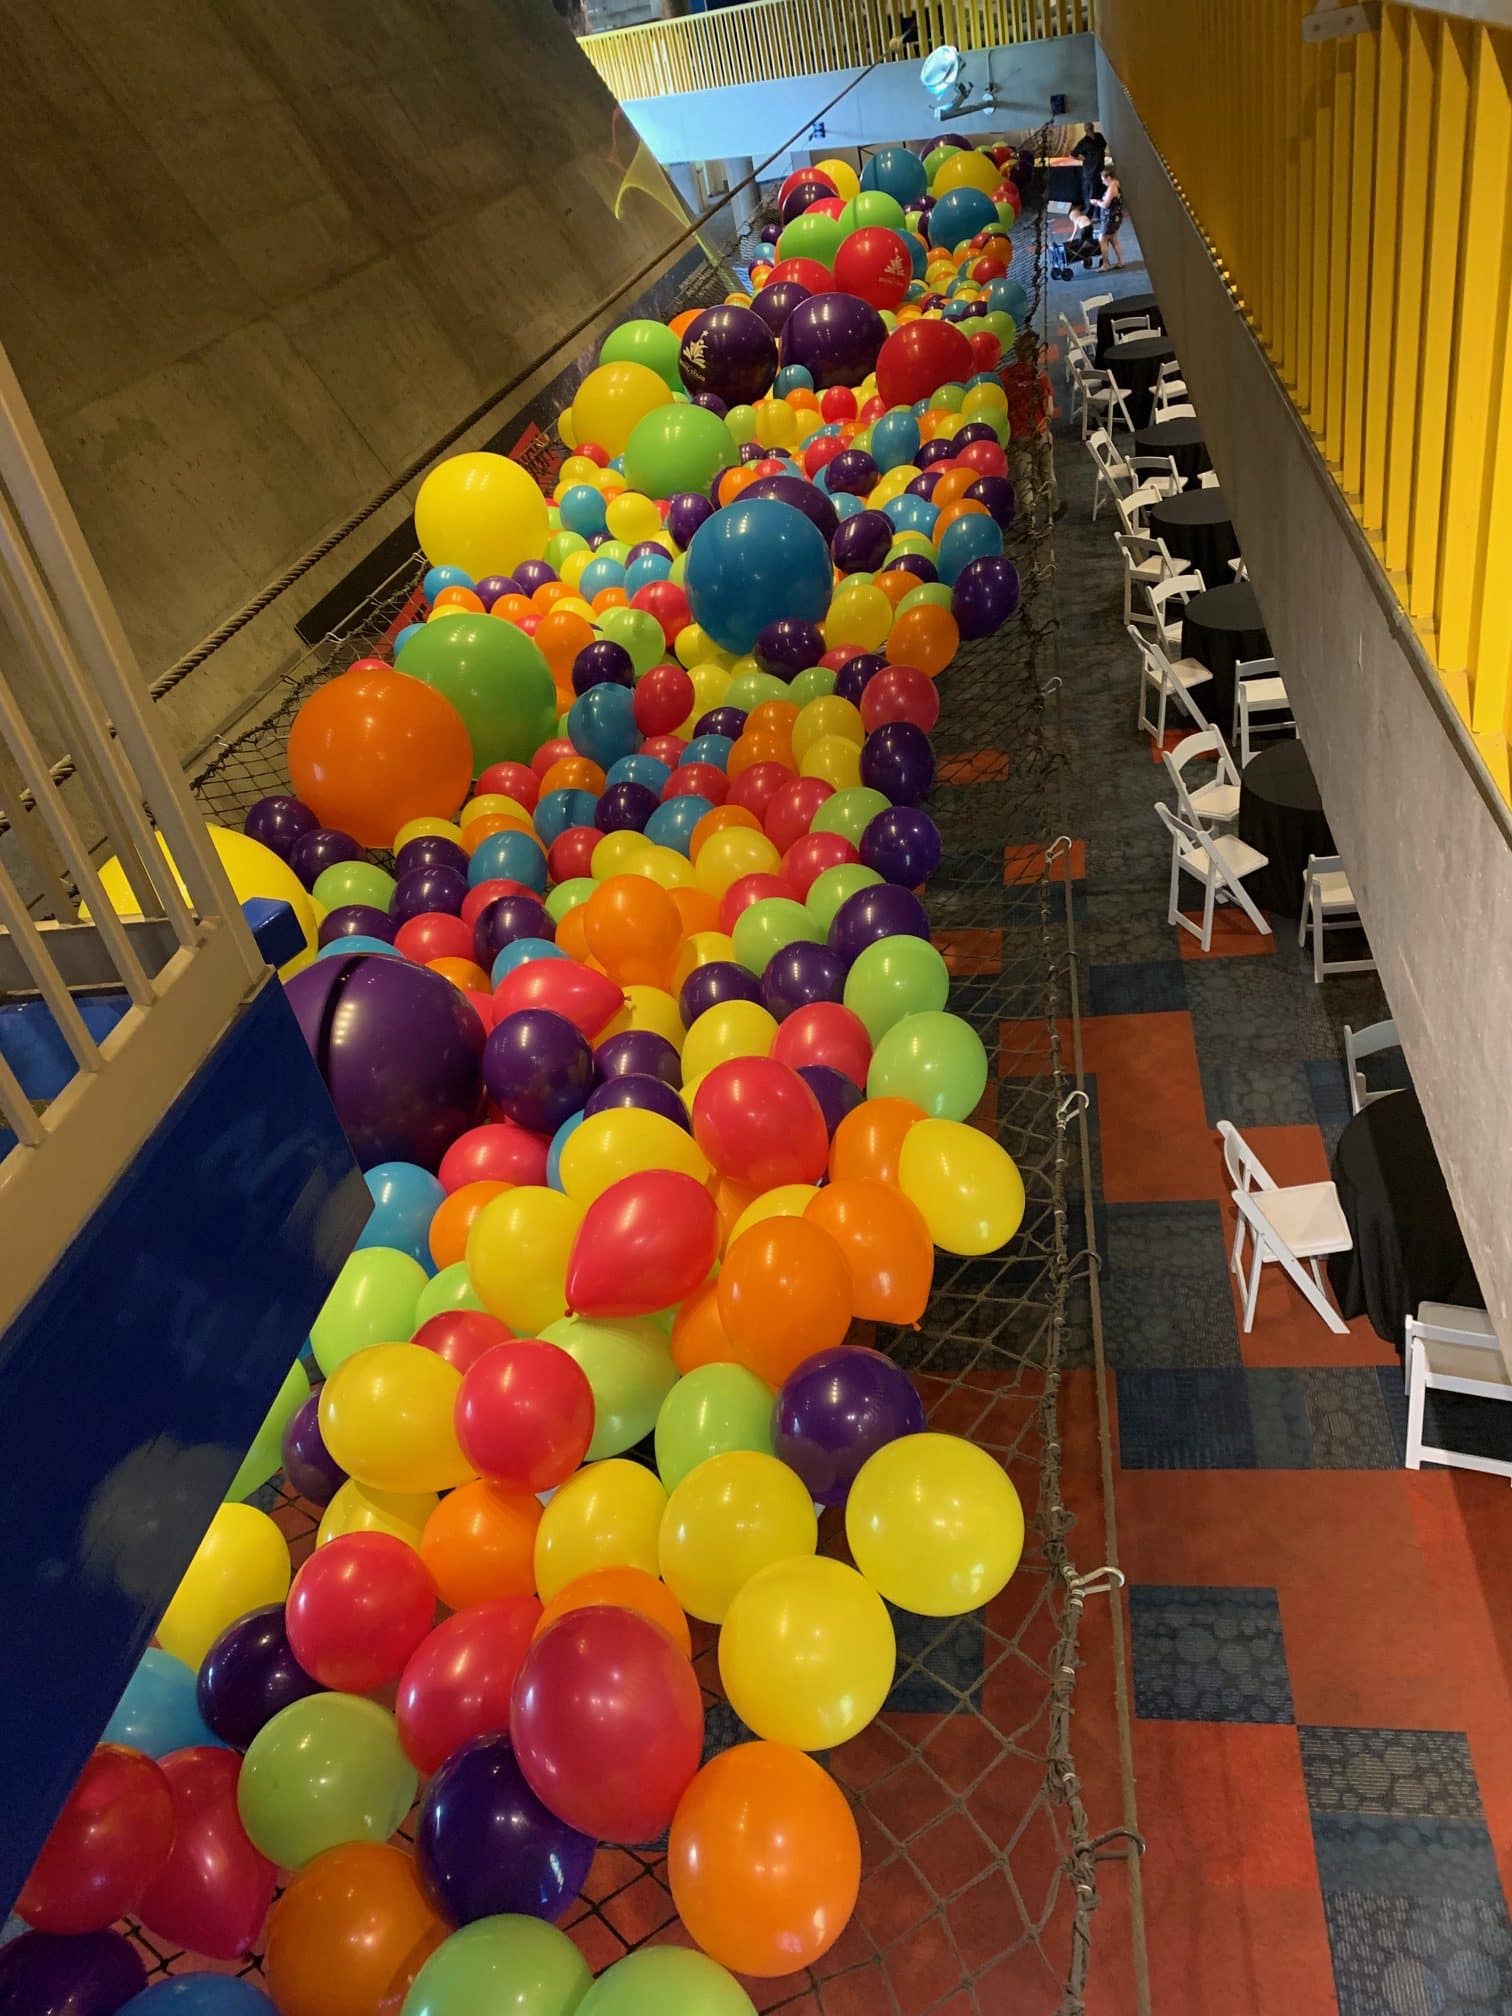 Arizona Science Center Mega Balloon Event - The Balloon People